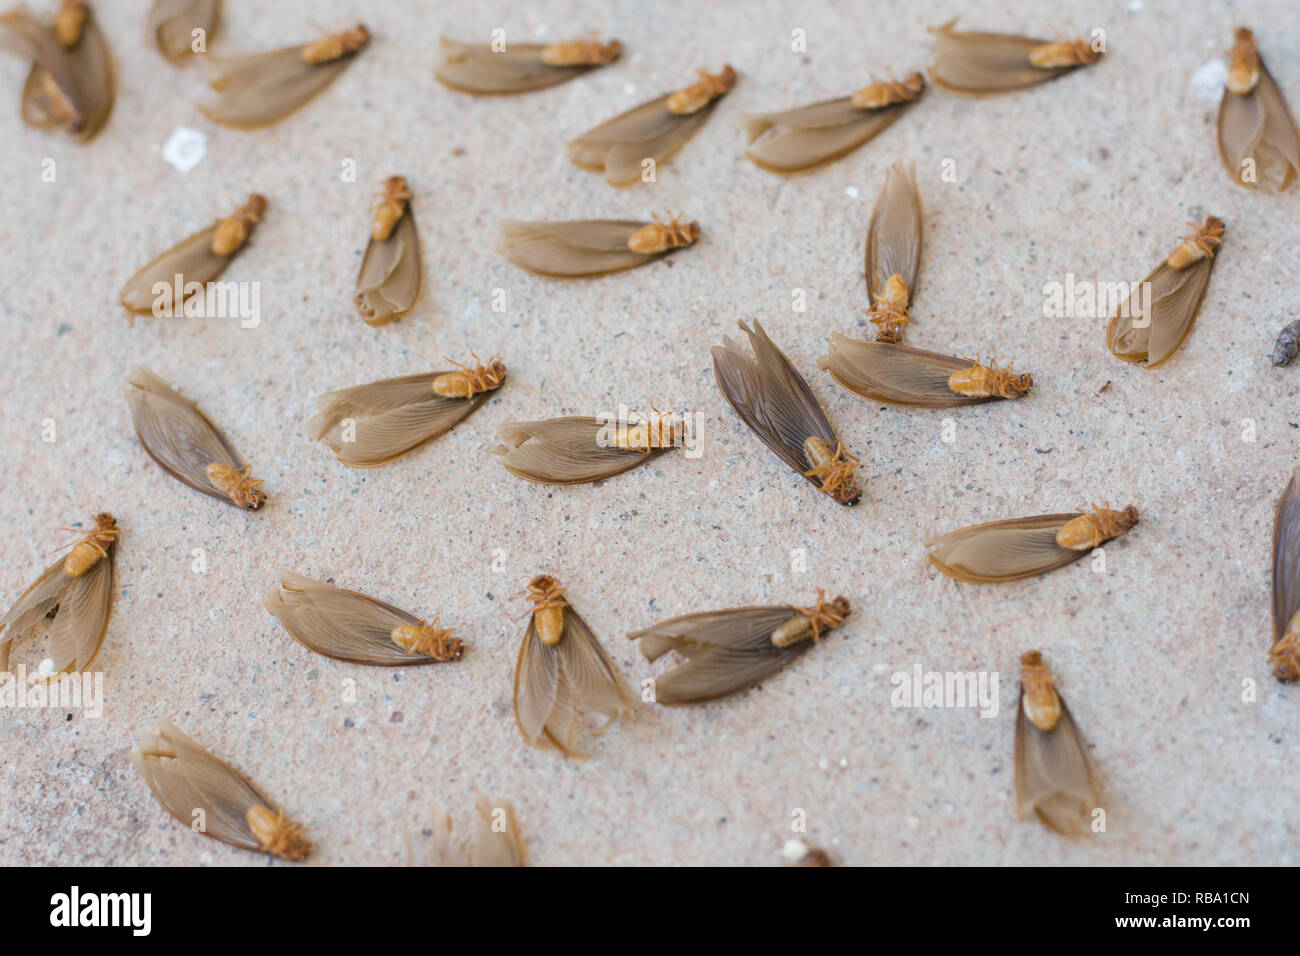 Muchas de las termitas con alas termitas aladas (marrón) sobre suelo de cemento Foto de stock